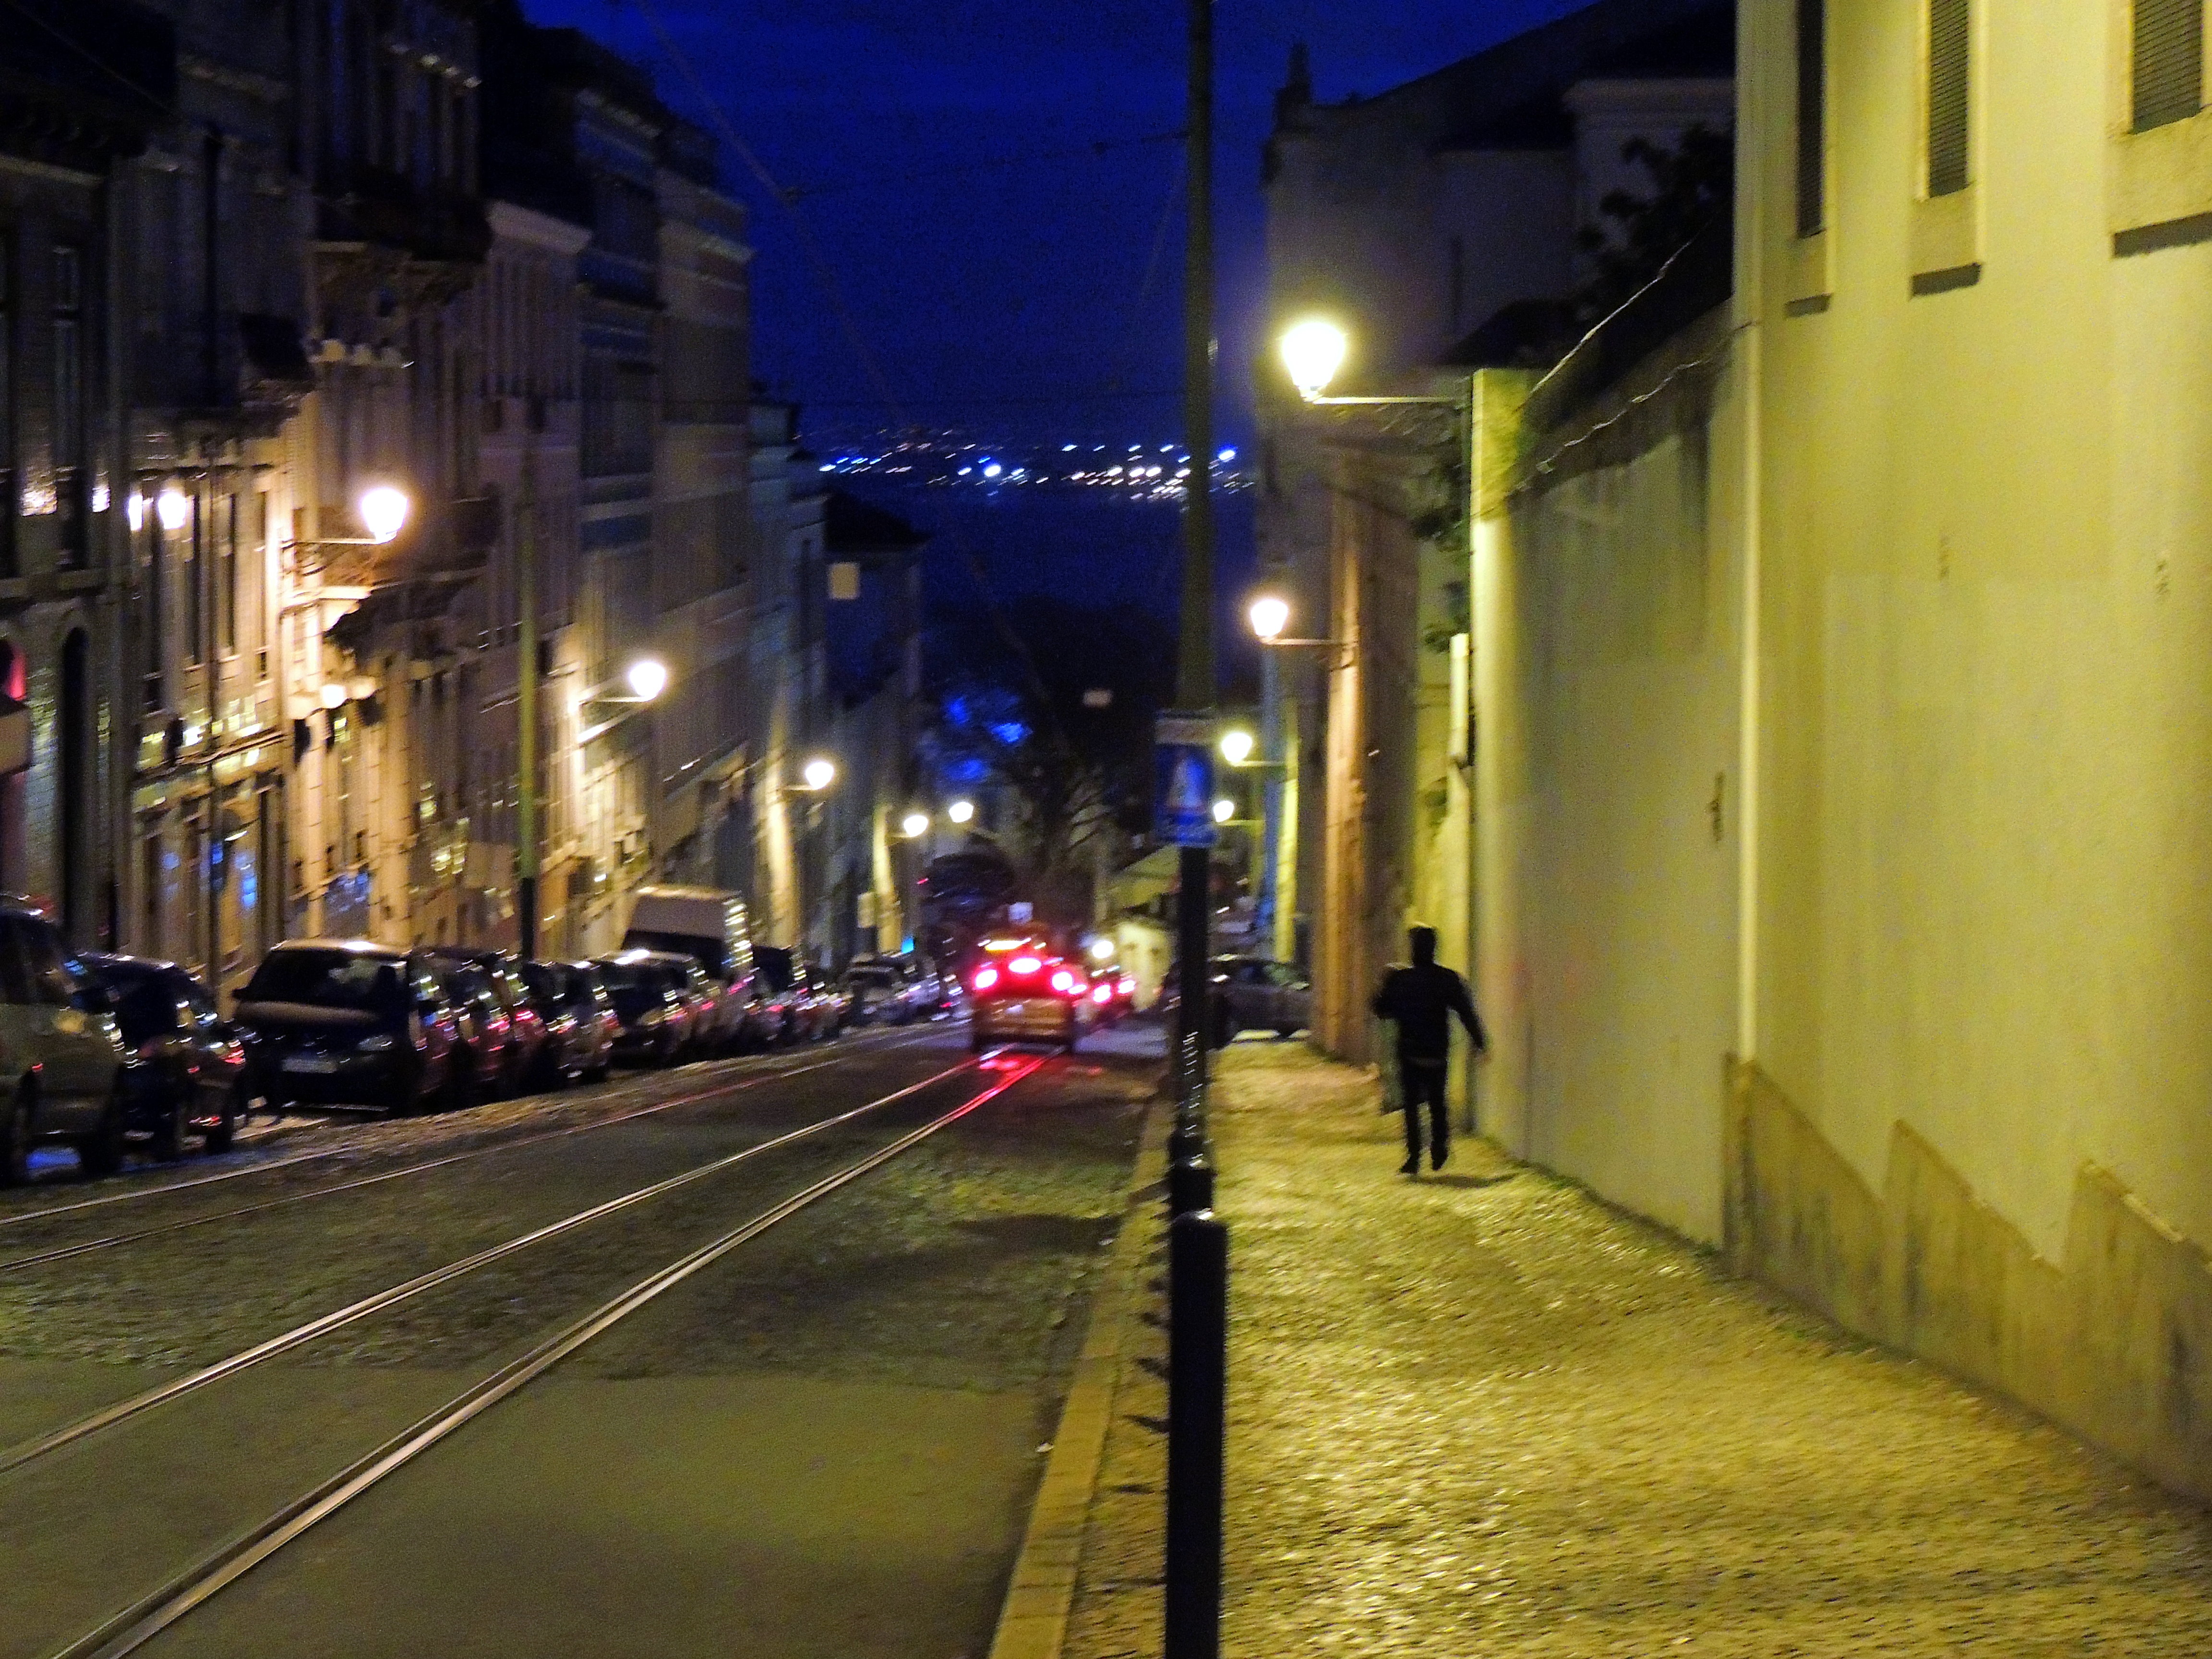 Foto de Lisboa (Lisbon), Portugal